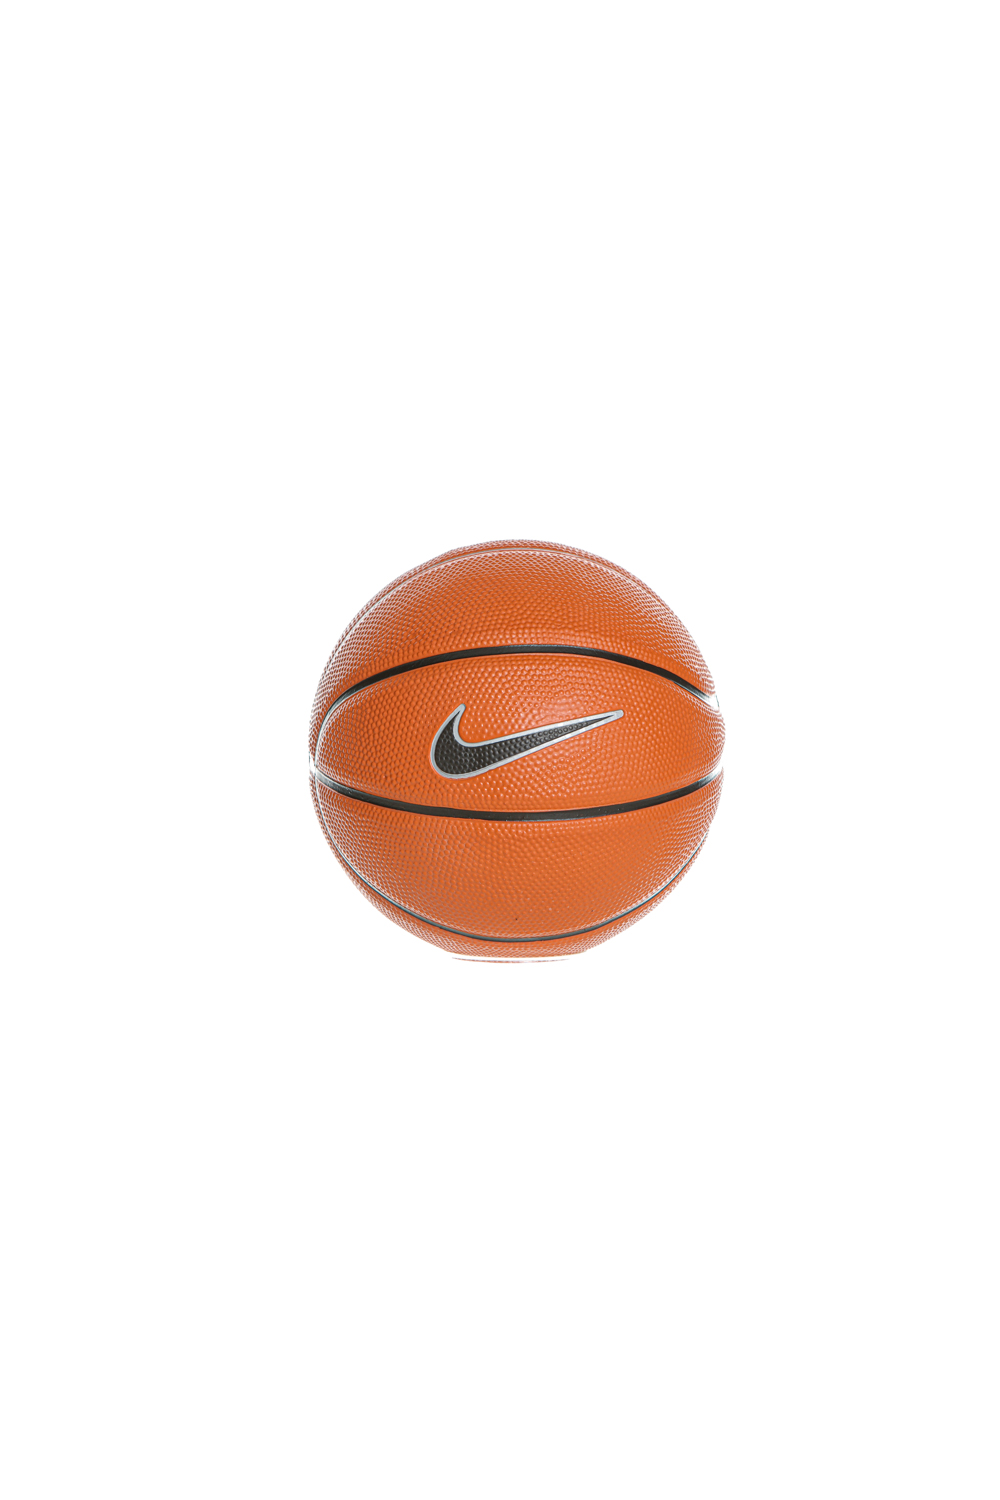 NIKE – Μπαλα basketball n3 NIKE SKILLS N.KI.08.03 πορτοκαλι μαυρη